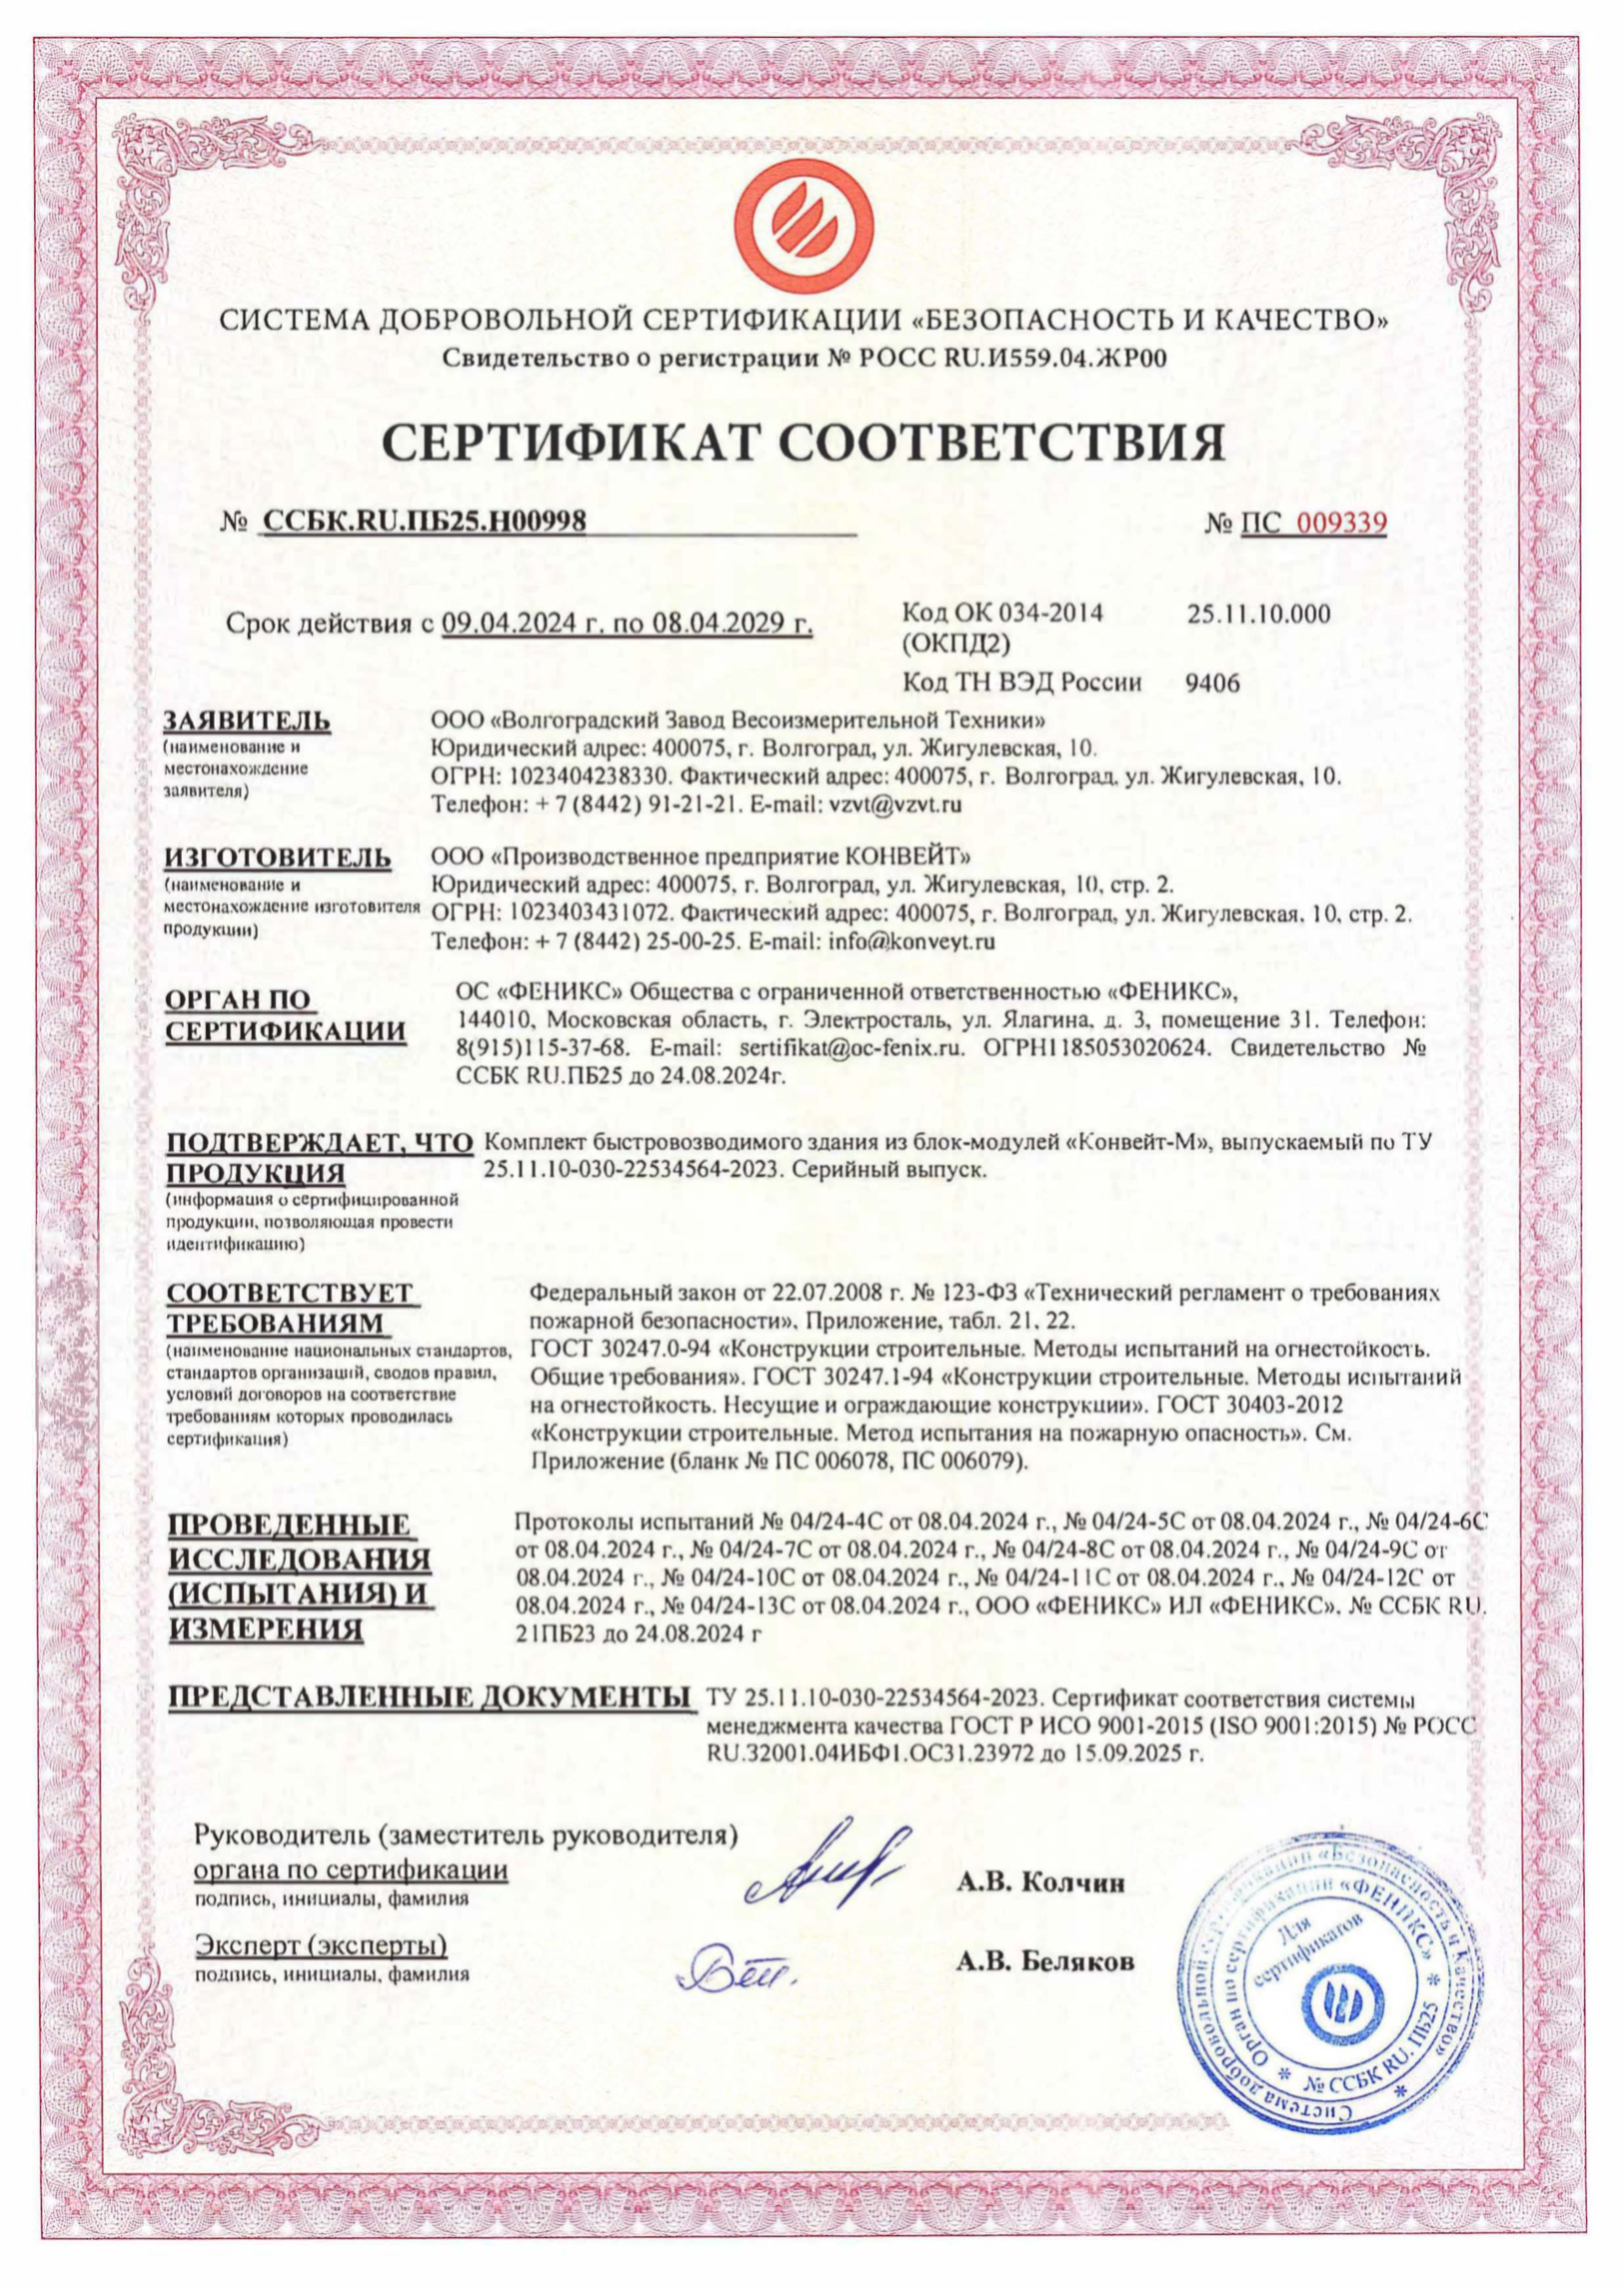 Сертификат соответствия КОНВЕЙТ-М техническому регламенту о требованиях пожарной безопасности